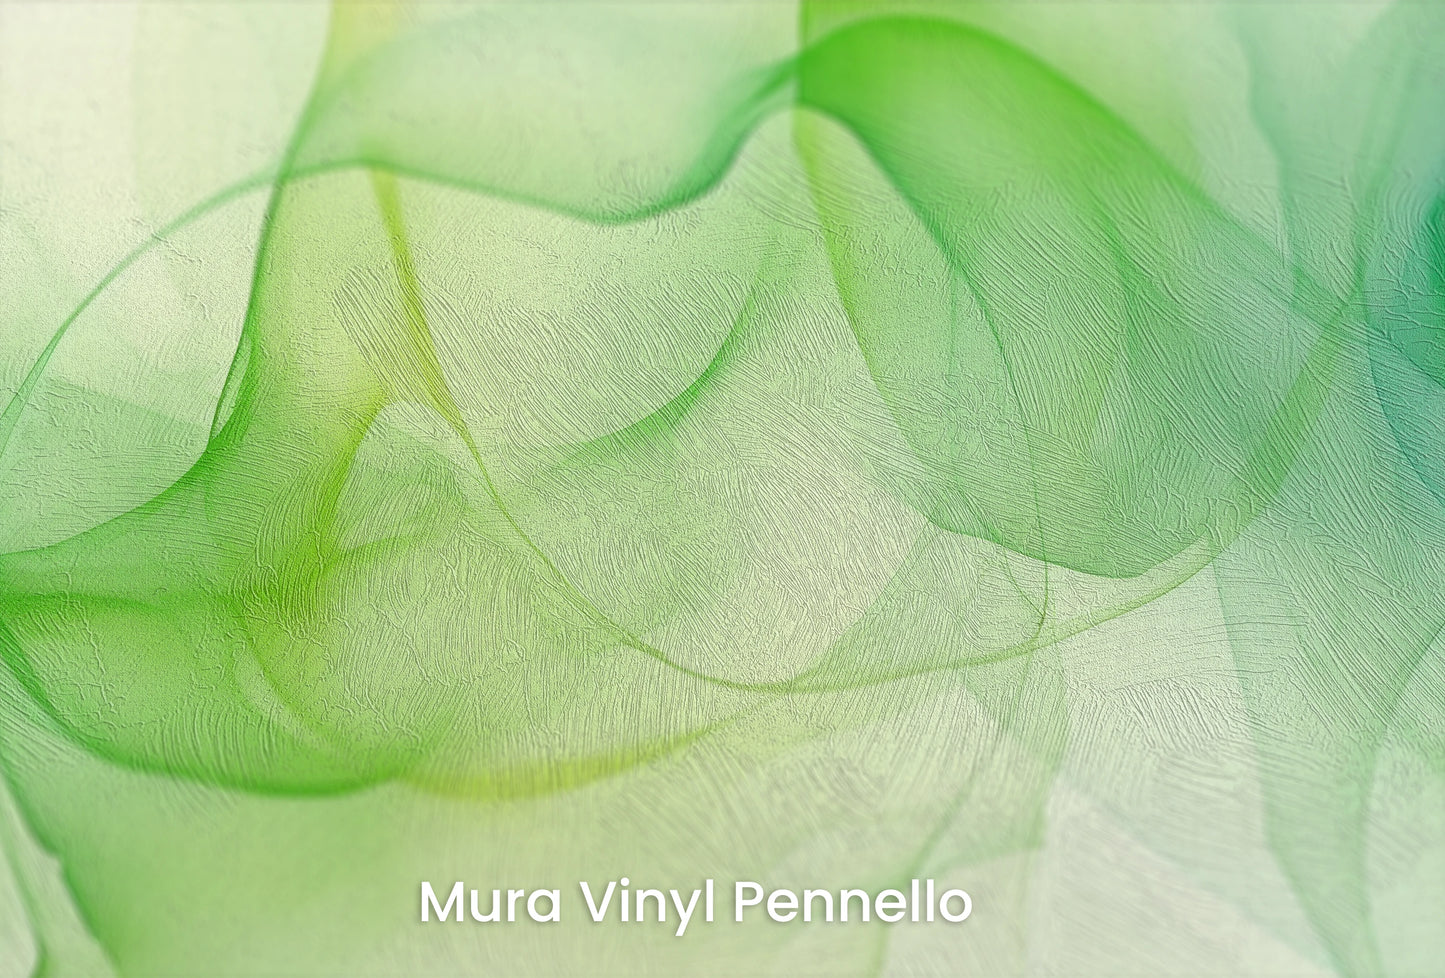 Zbliżenie na artystyczną fototapetę o nazwie Organiczna Symfonia na podłożu Mura Vinyl Pennello - faktura pociągnięć pędzla malarskiego.